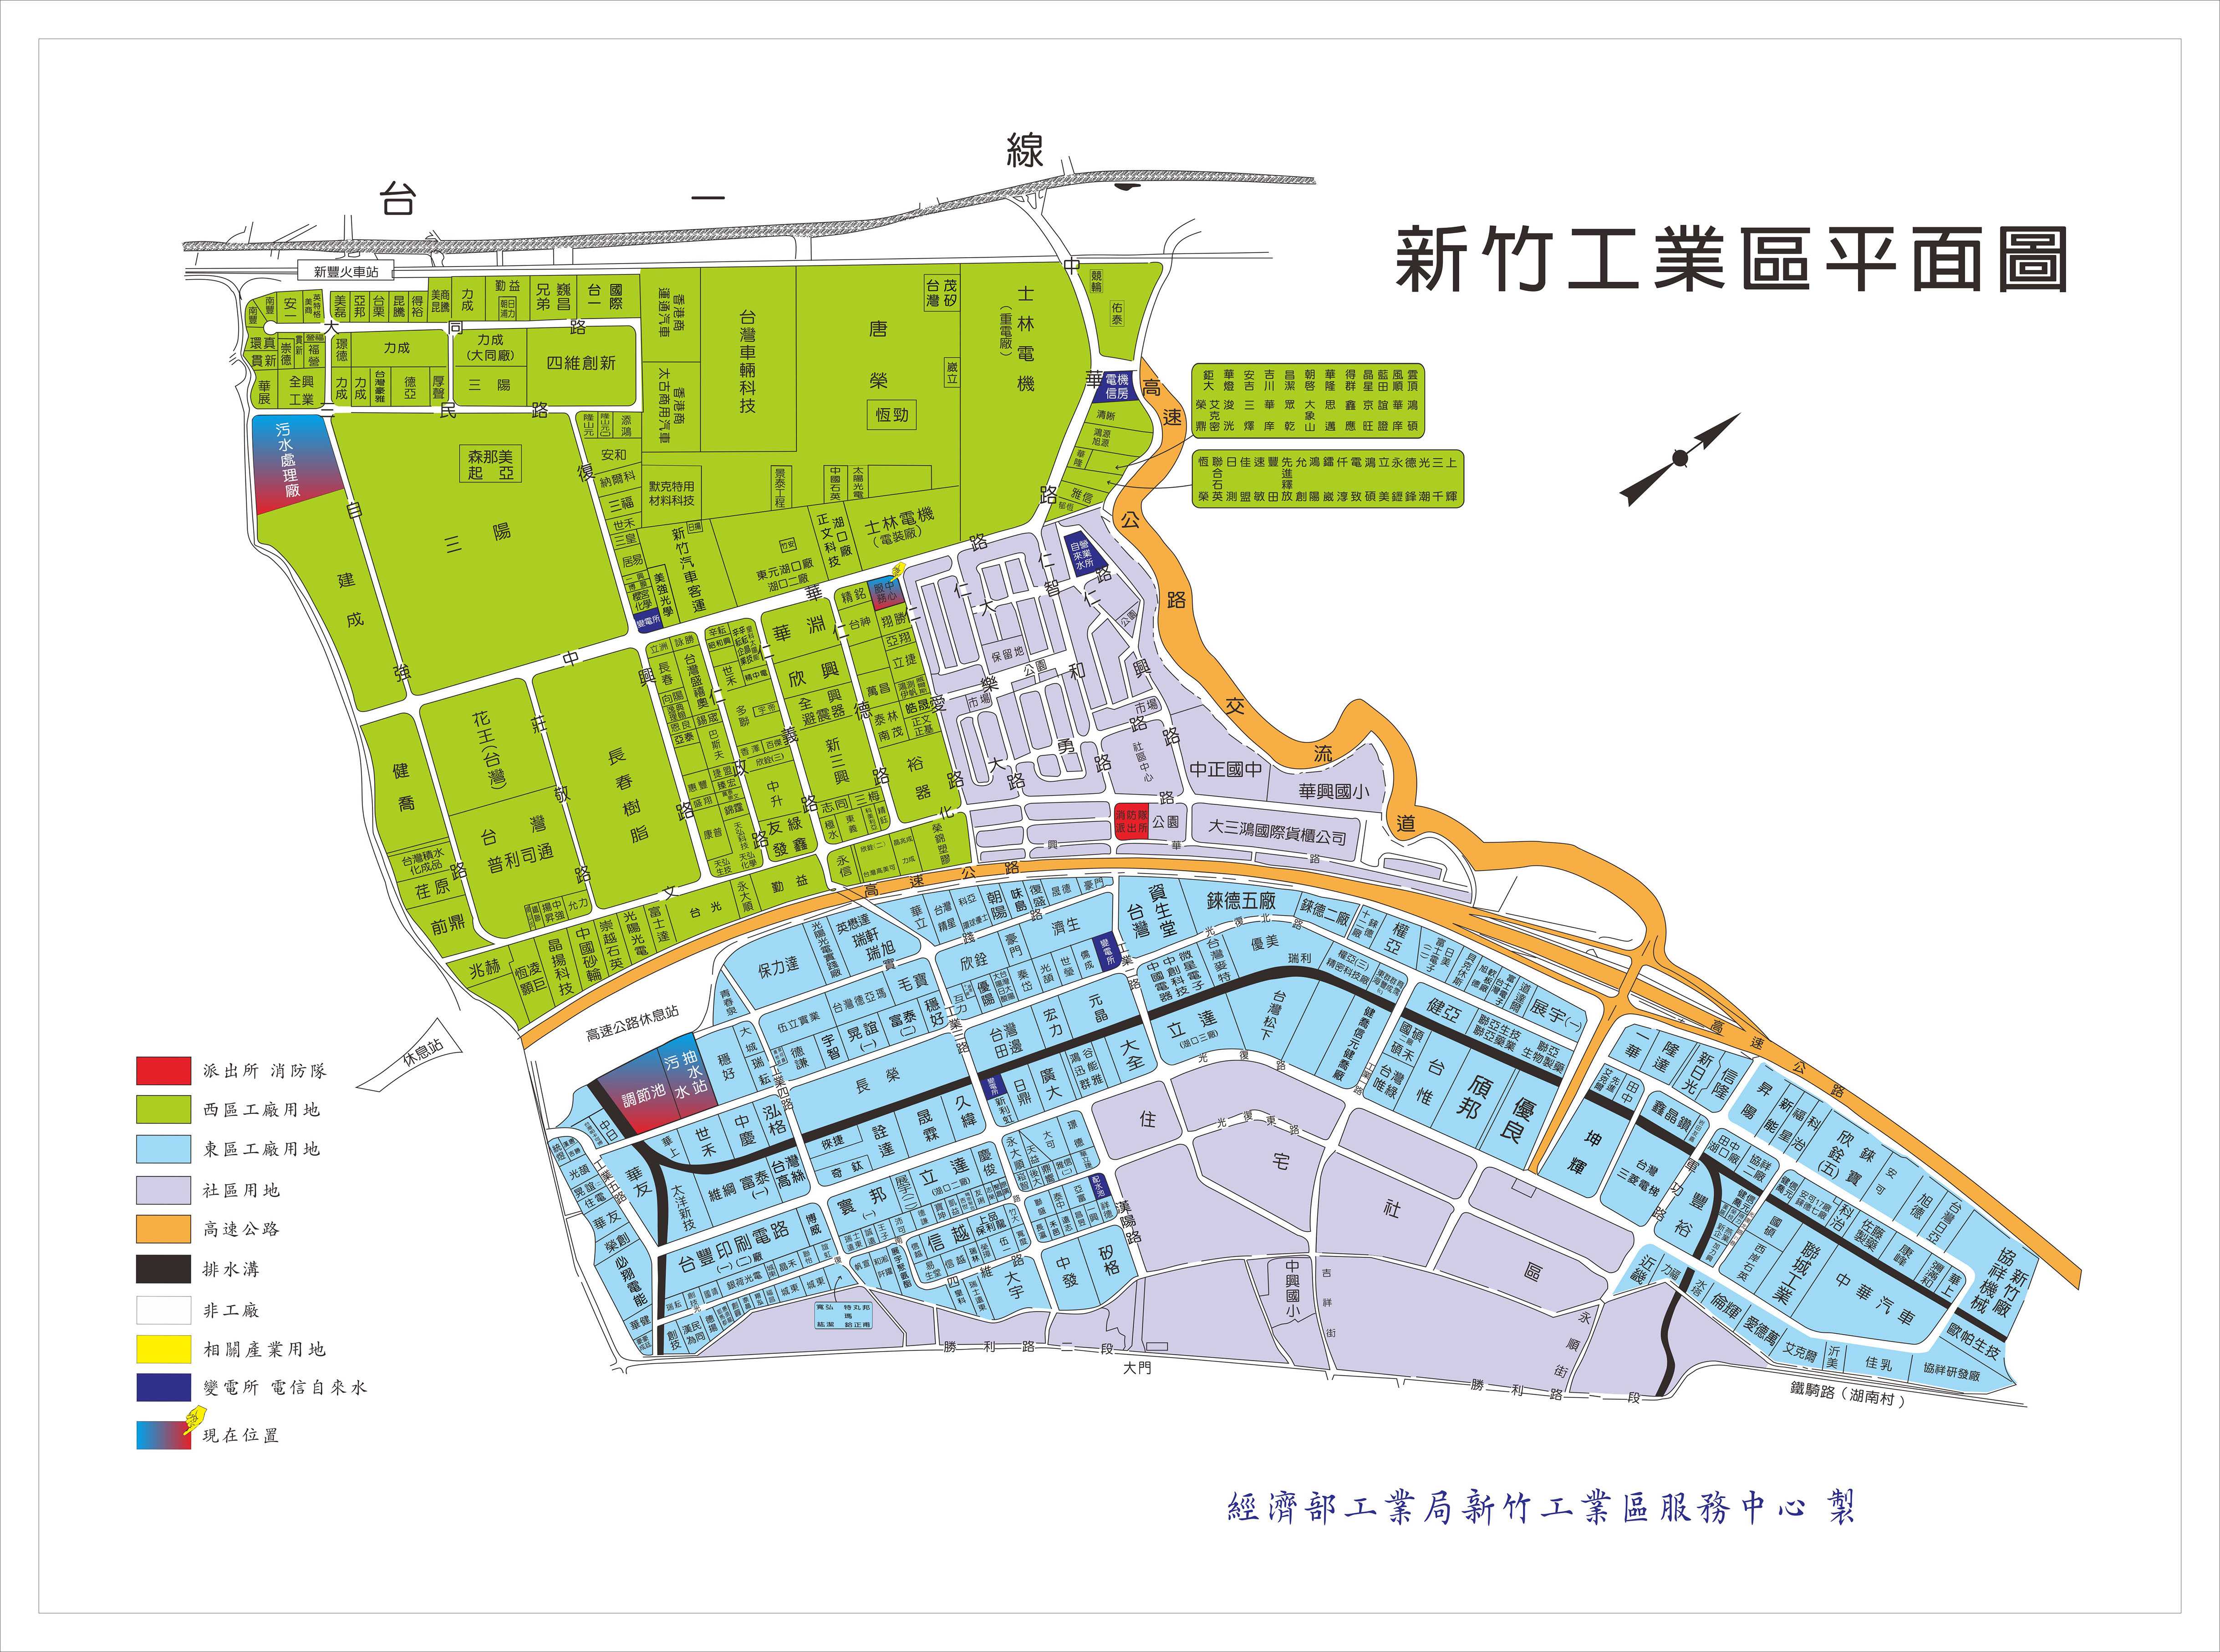 標示工廠廠地位置圖(新竹工業區平面圖)_3